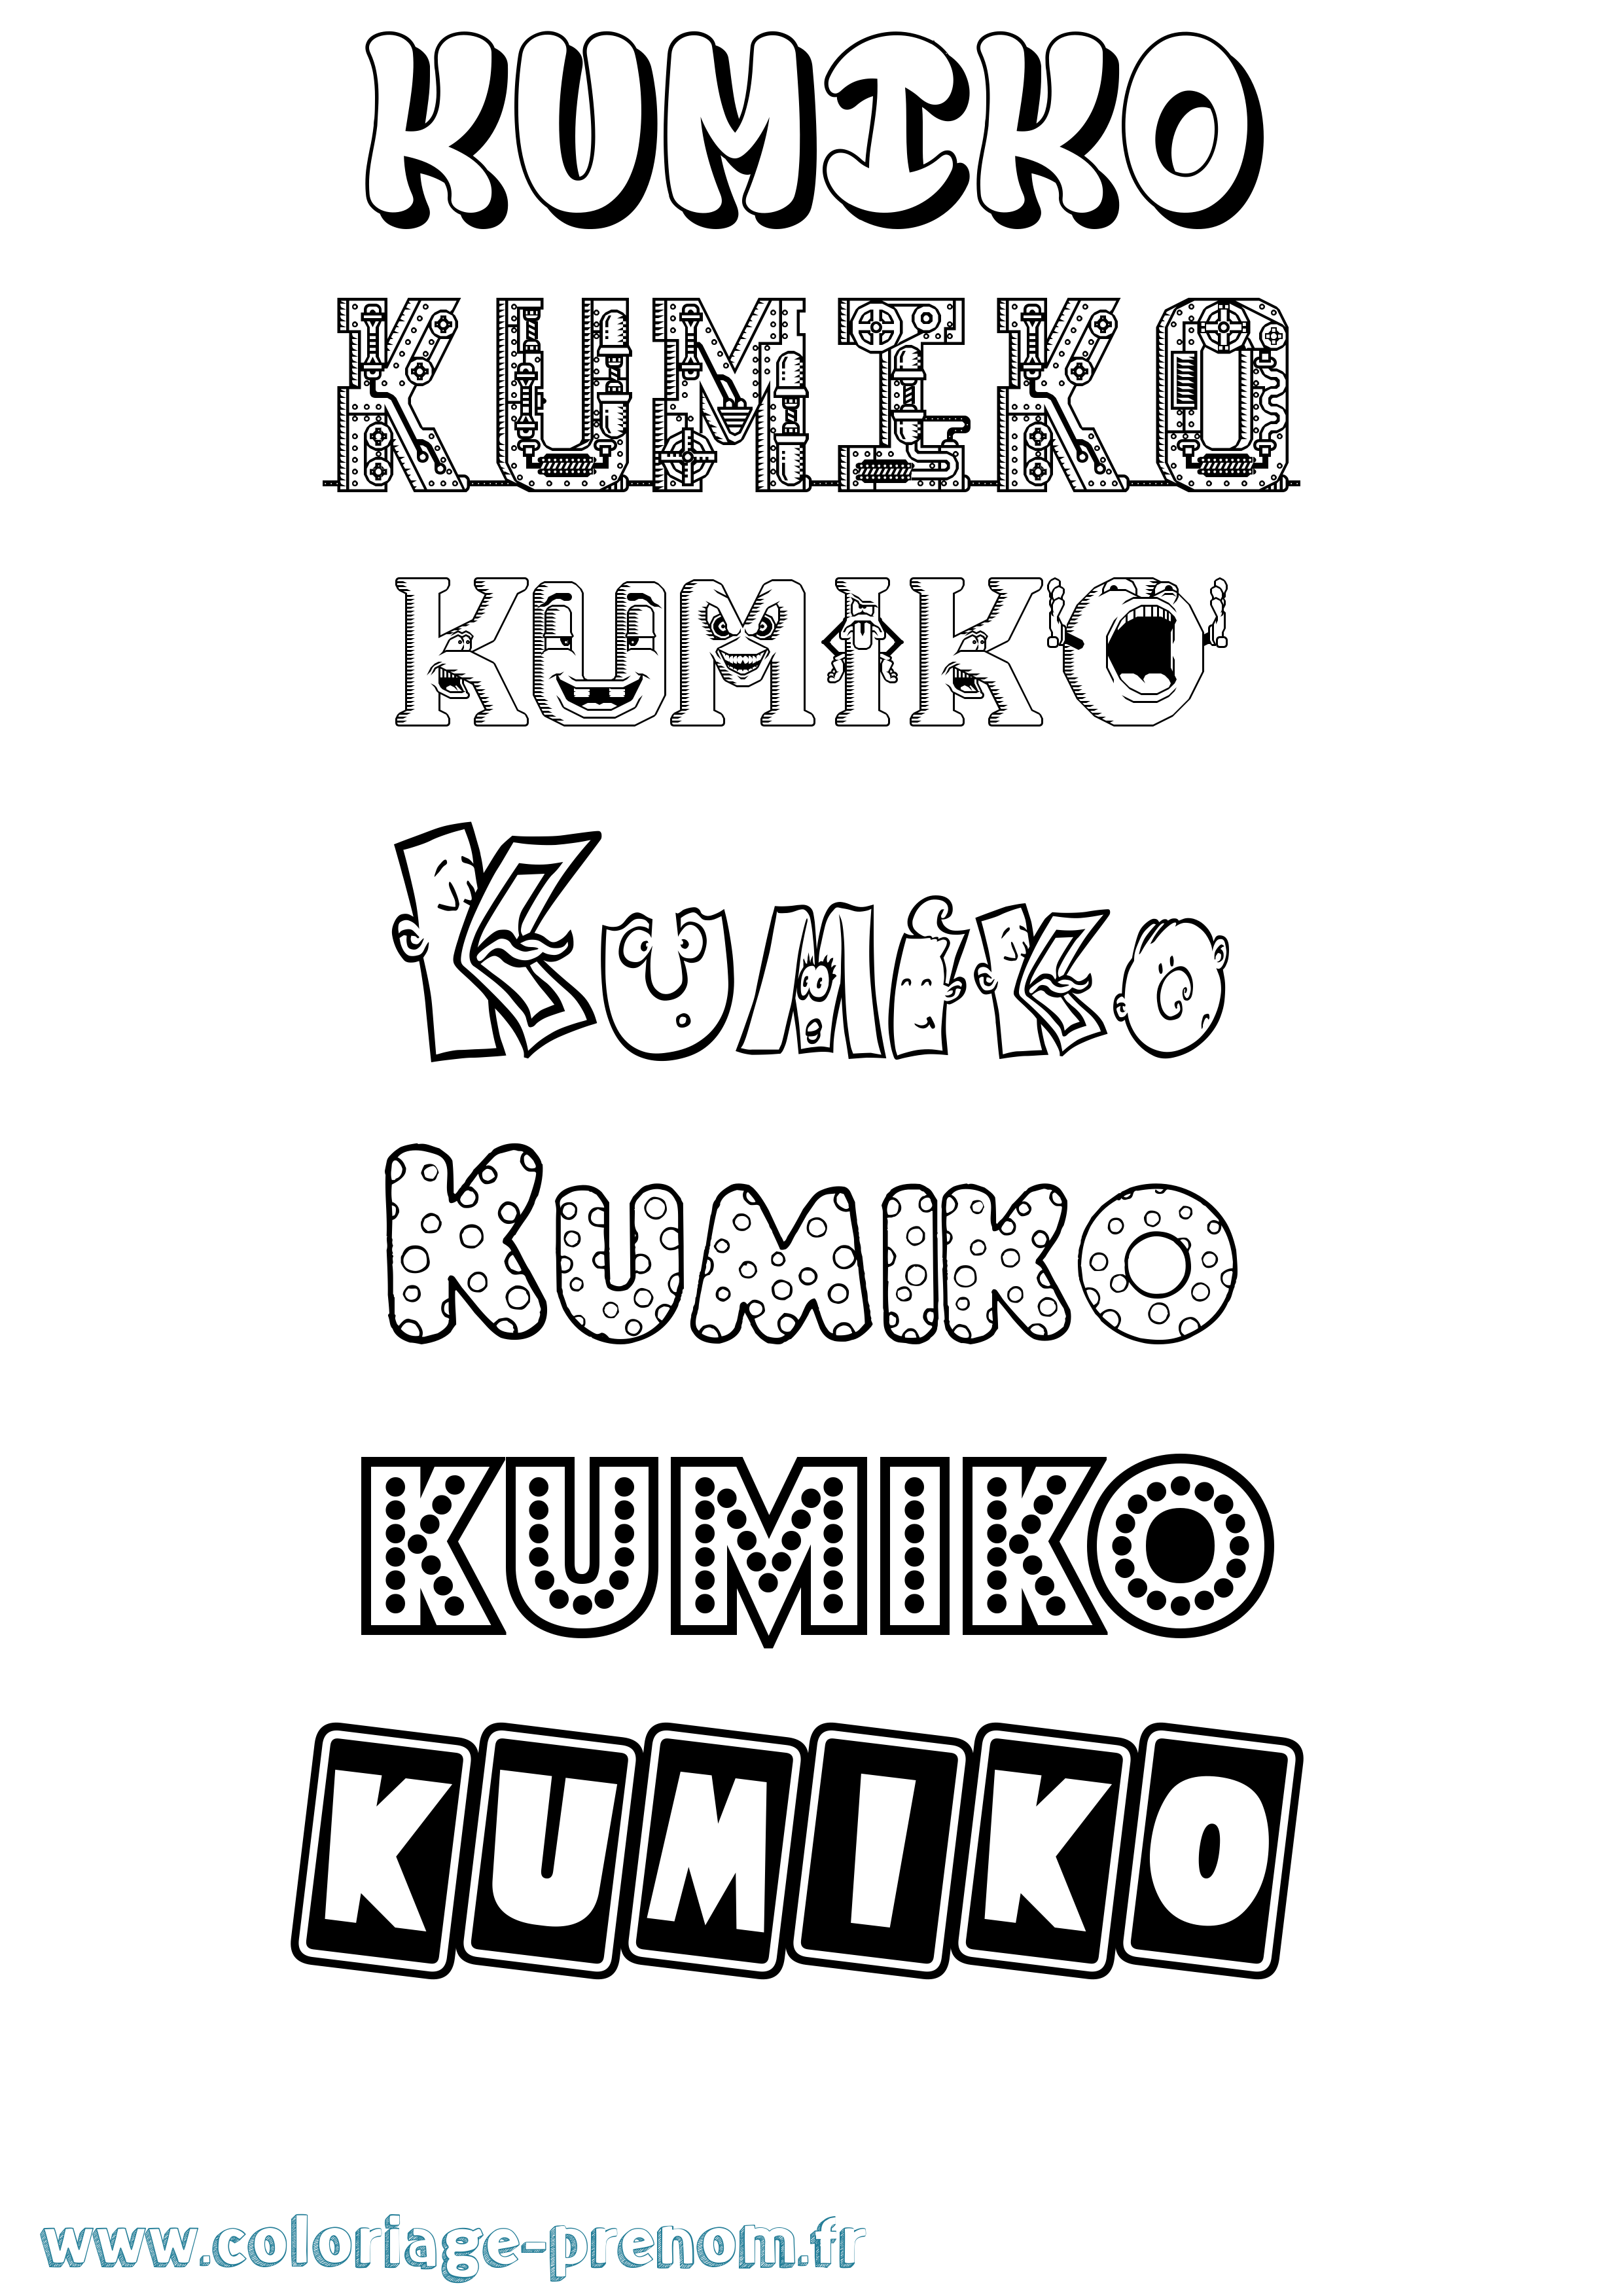 Coloriage prénom Kumiko Fun